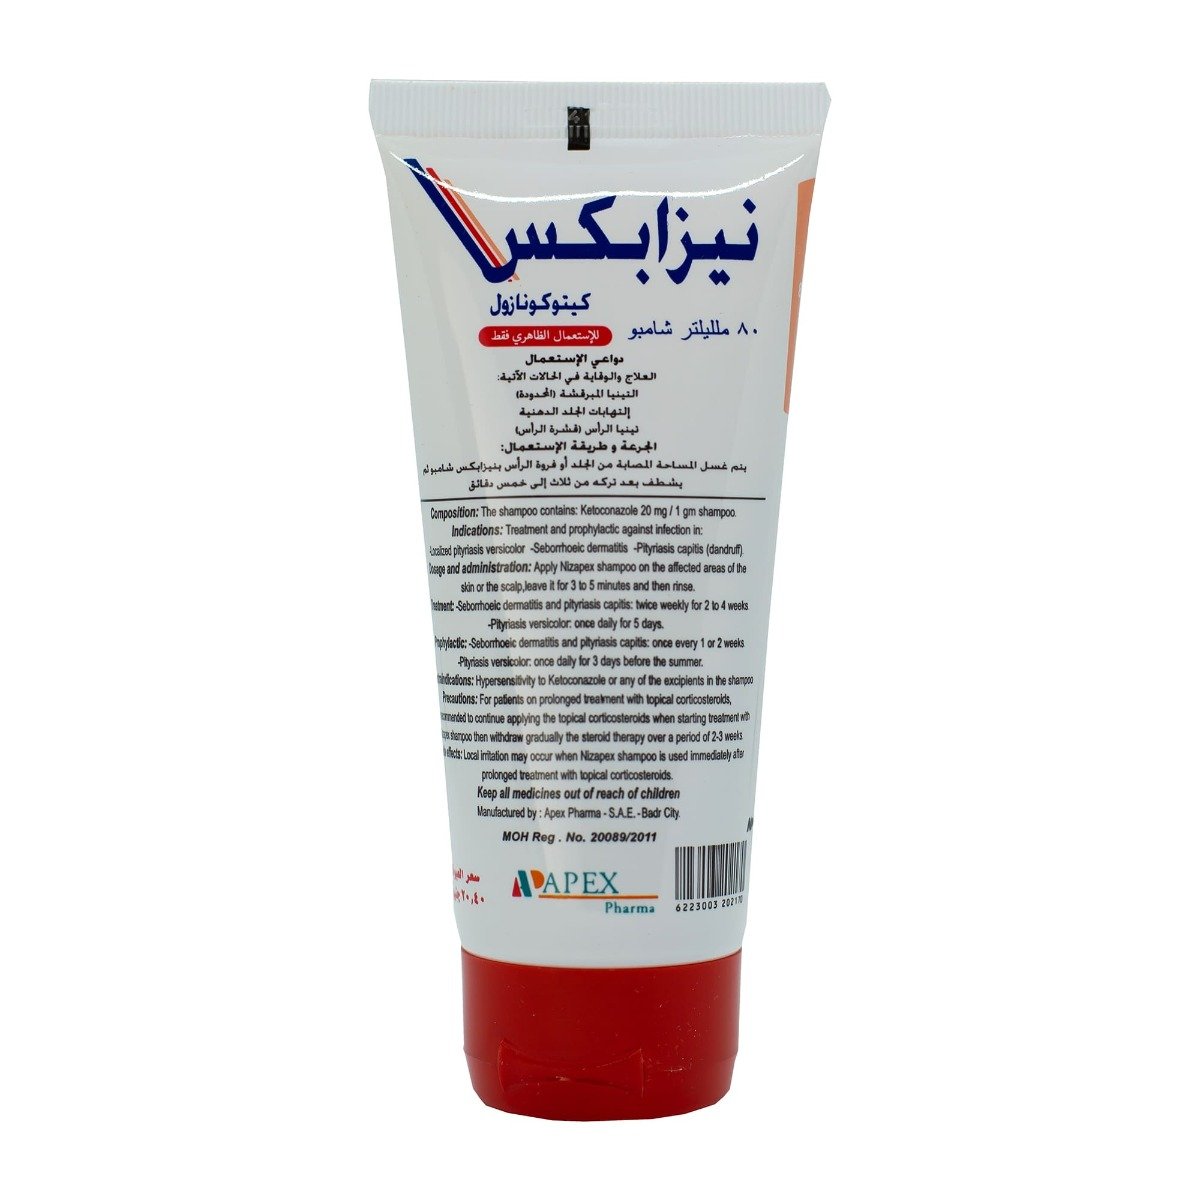 Nizapex Shampoo - 80 ml - Bloom Pharmacy